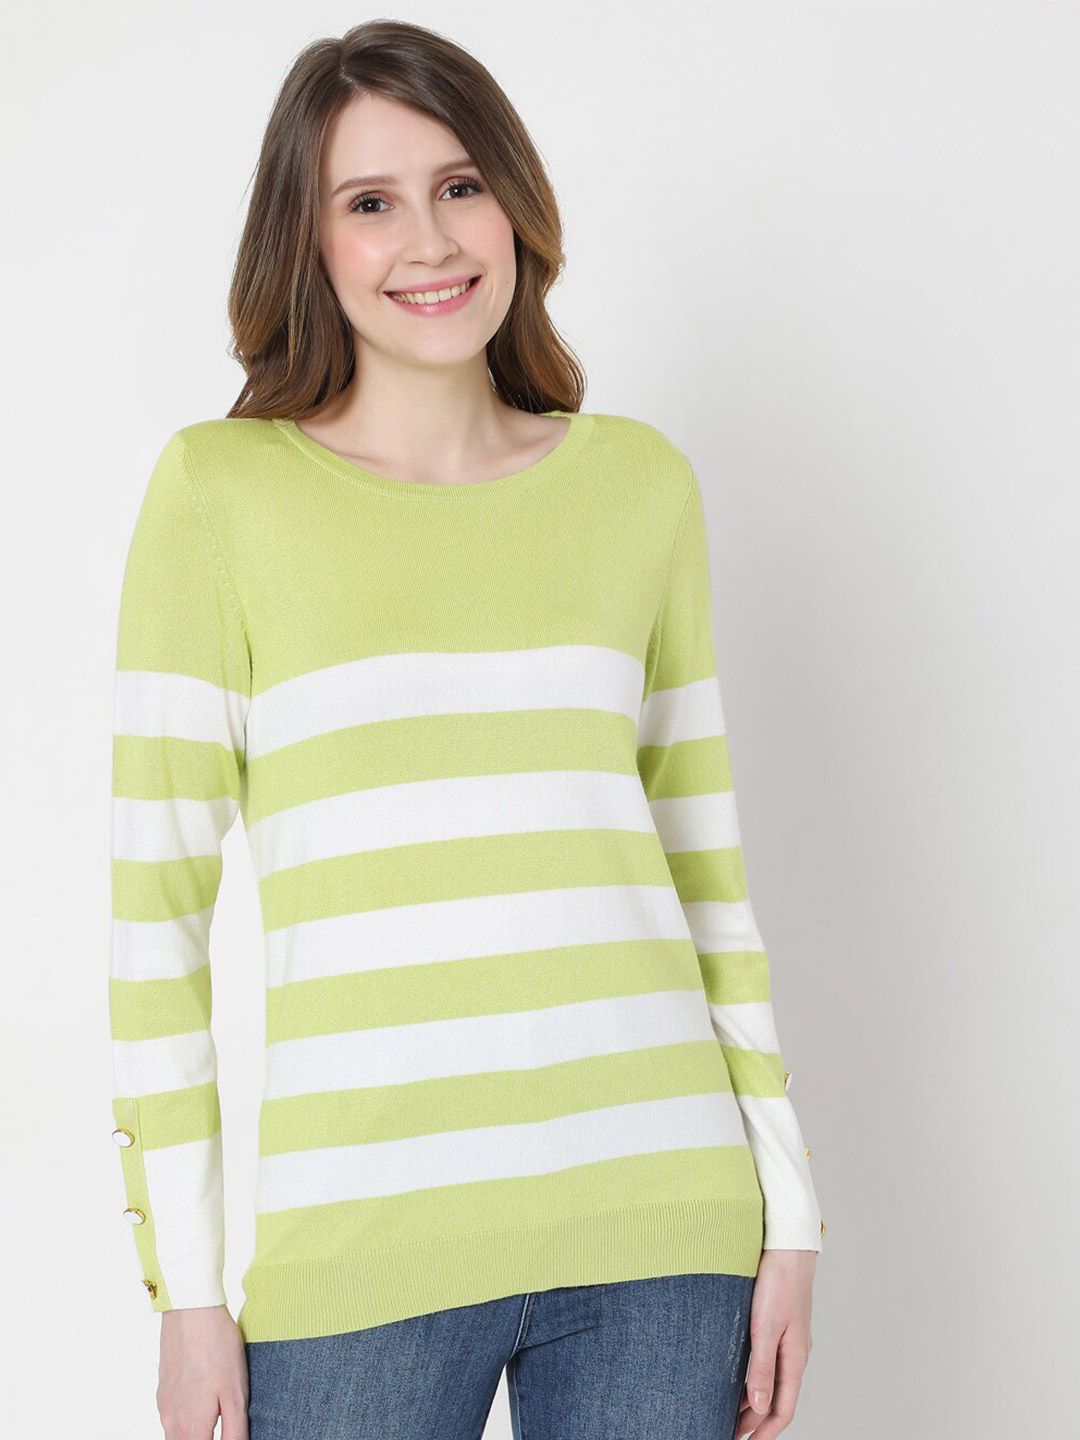 Vero Moda Women Green & White Striped Pullover Price in India